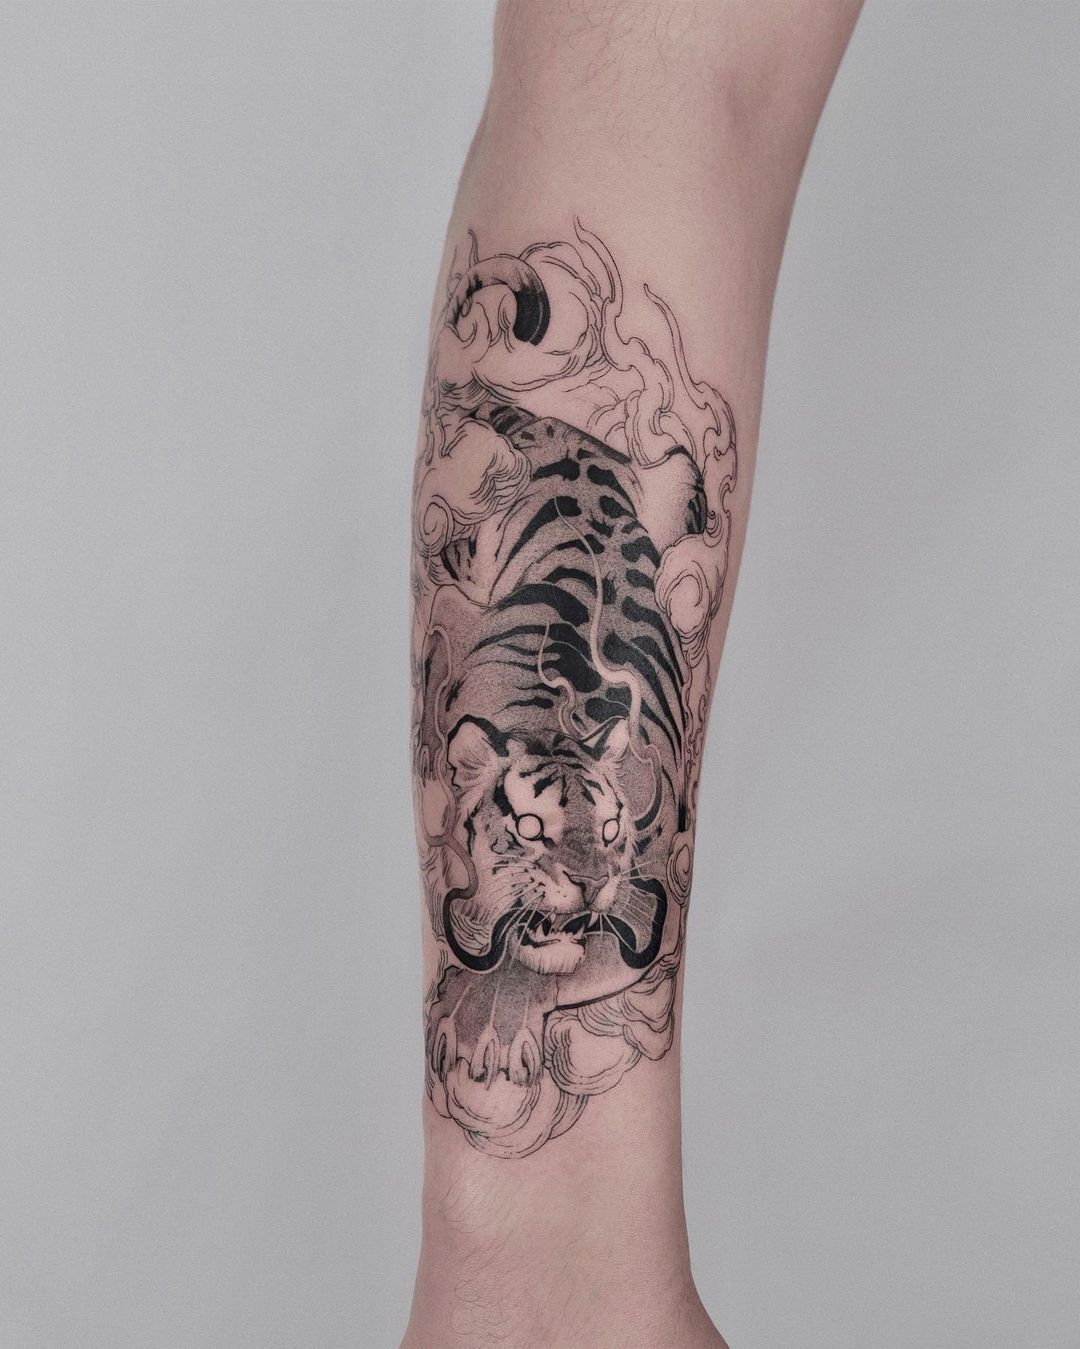 Realistic portrait tattoo design by wilwang tatt 2